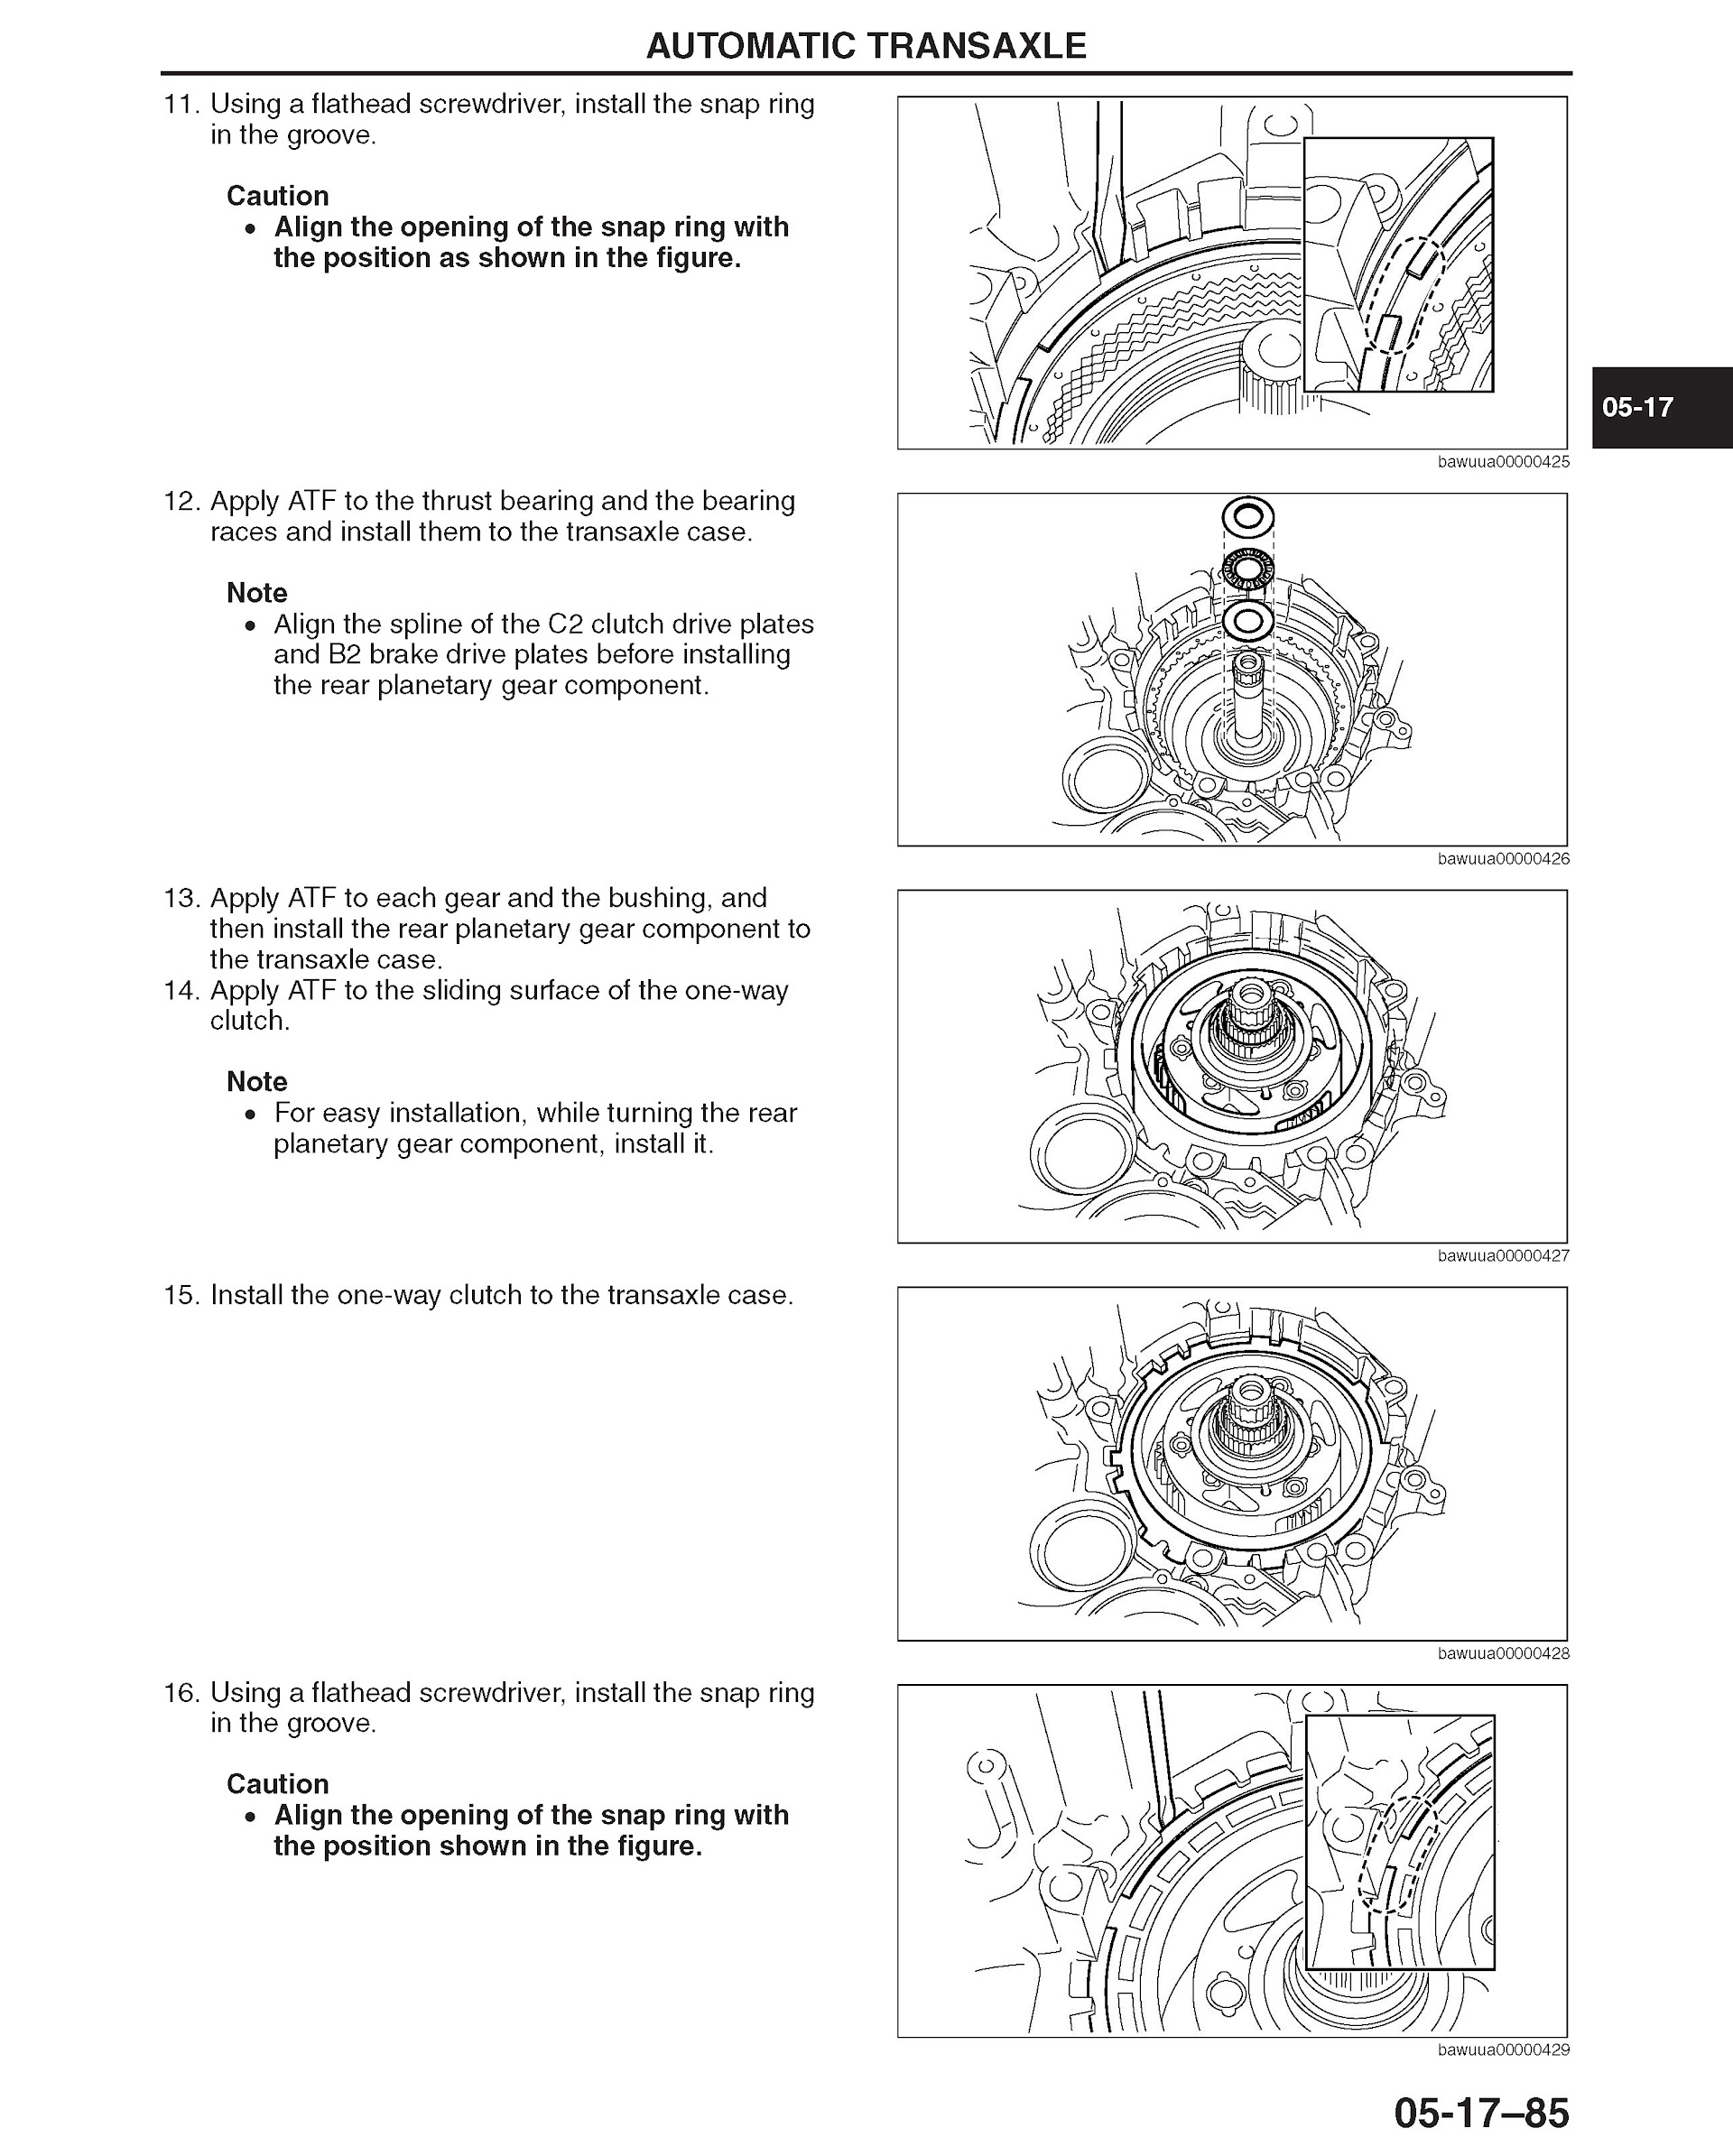 Download 2009-2012 Mazda 6 Repair Manual